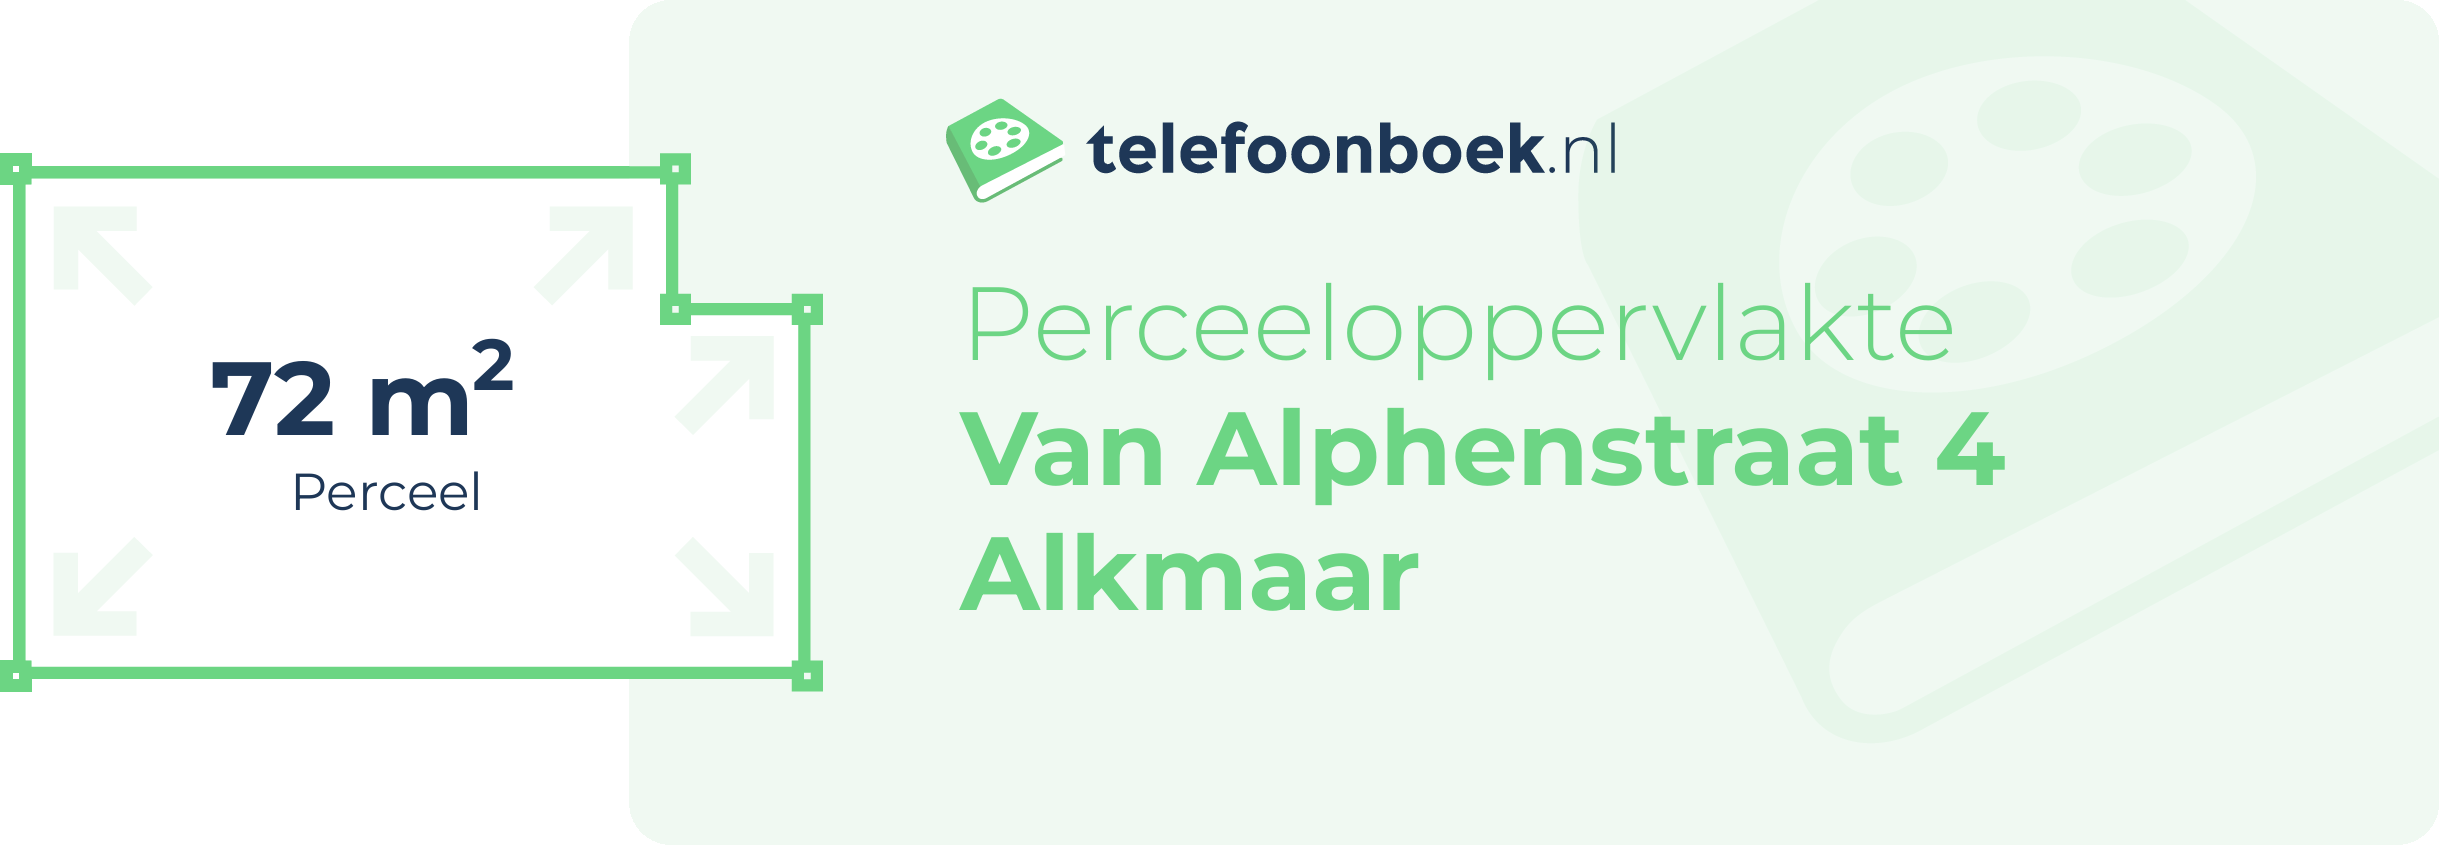 Perceeloppervlakte Van Alphenstraat 4 Alkmaar